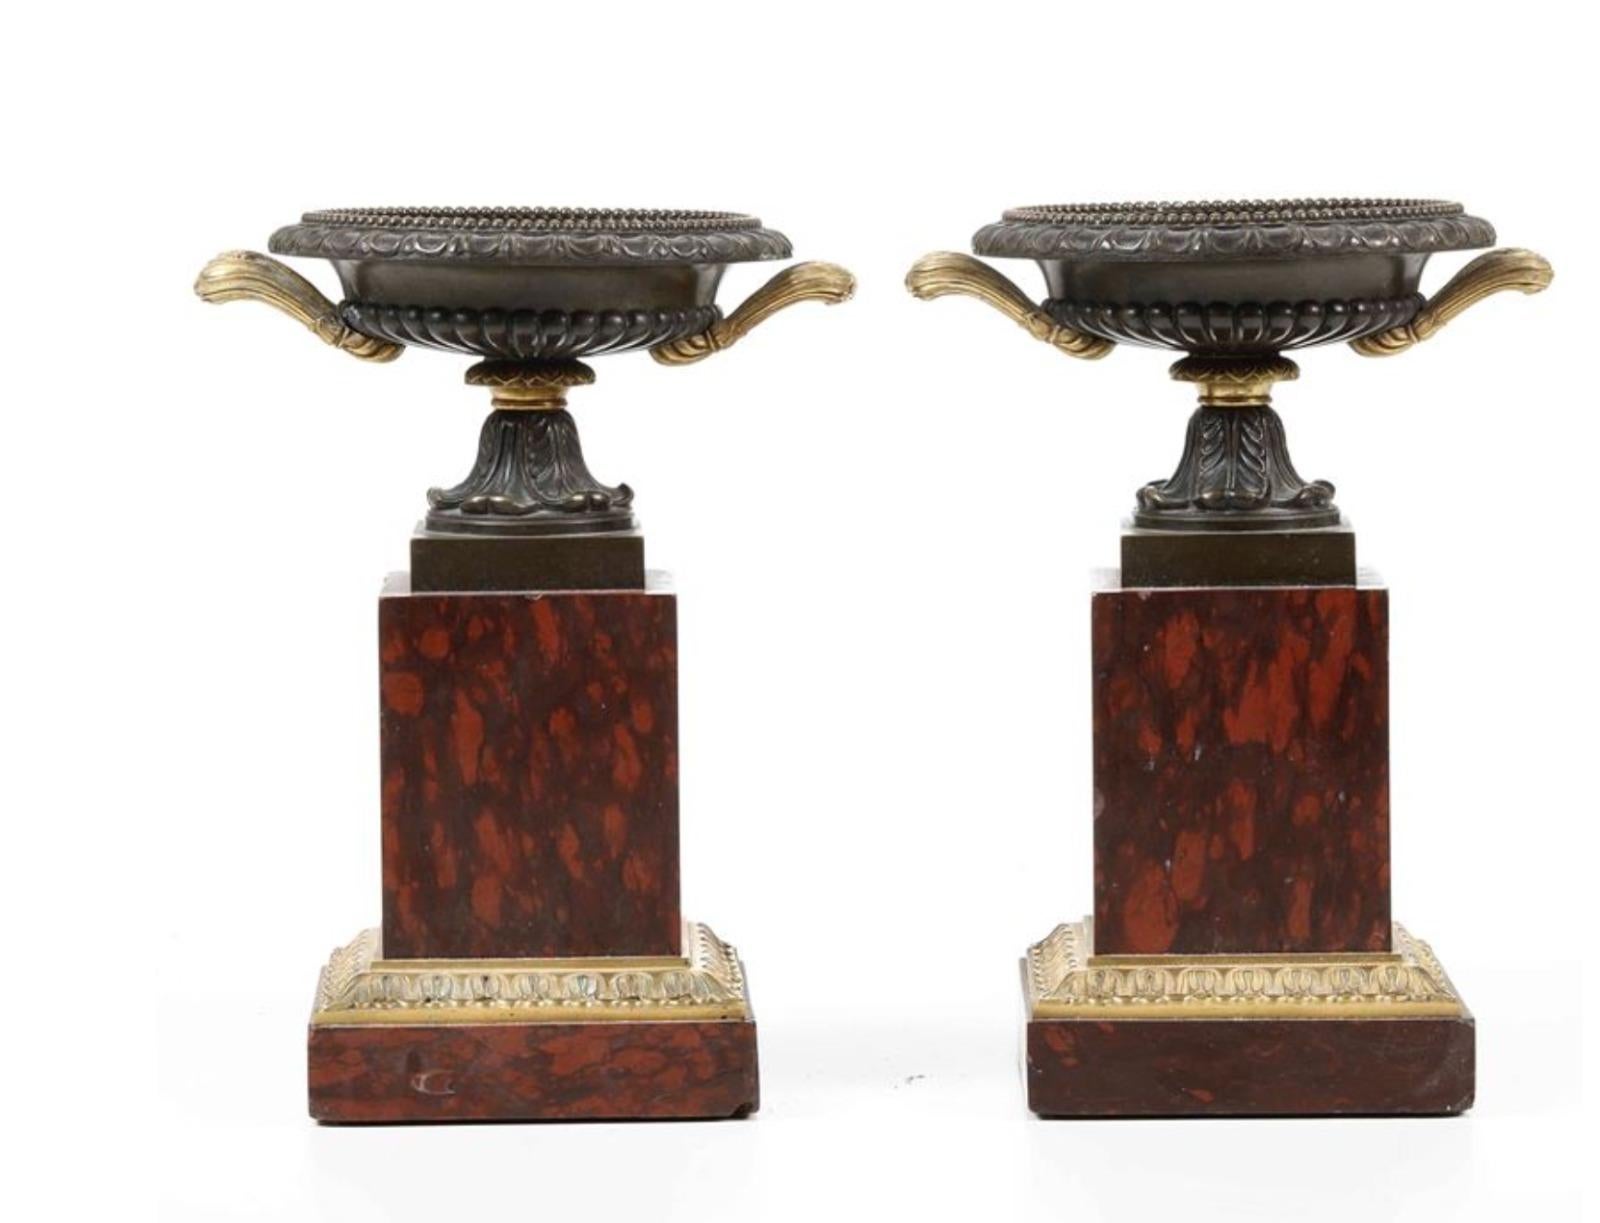 Paar Vasen aus Bronze und rotem Marmor,
Frankreich
19. Jahrhundert
H: 27
gute Bedingungen
Nie wiederhergestellt